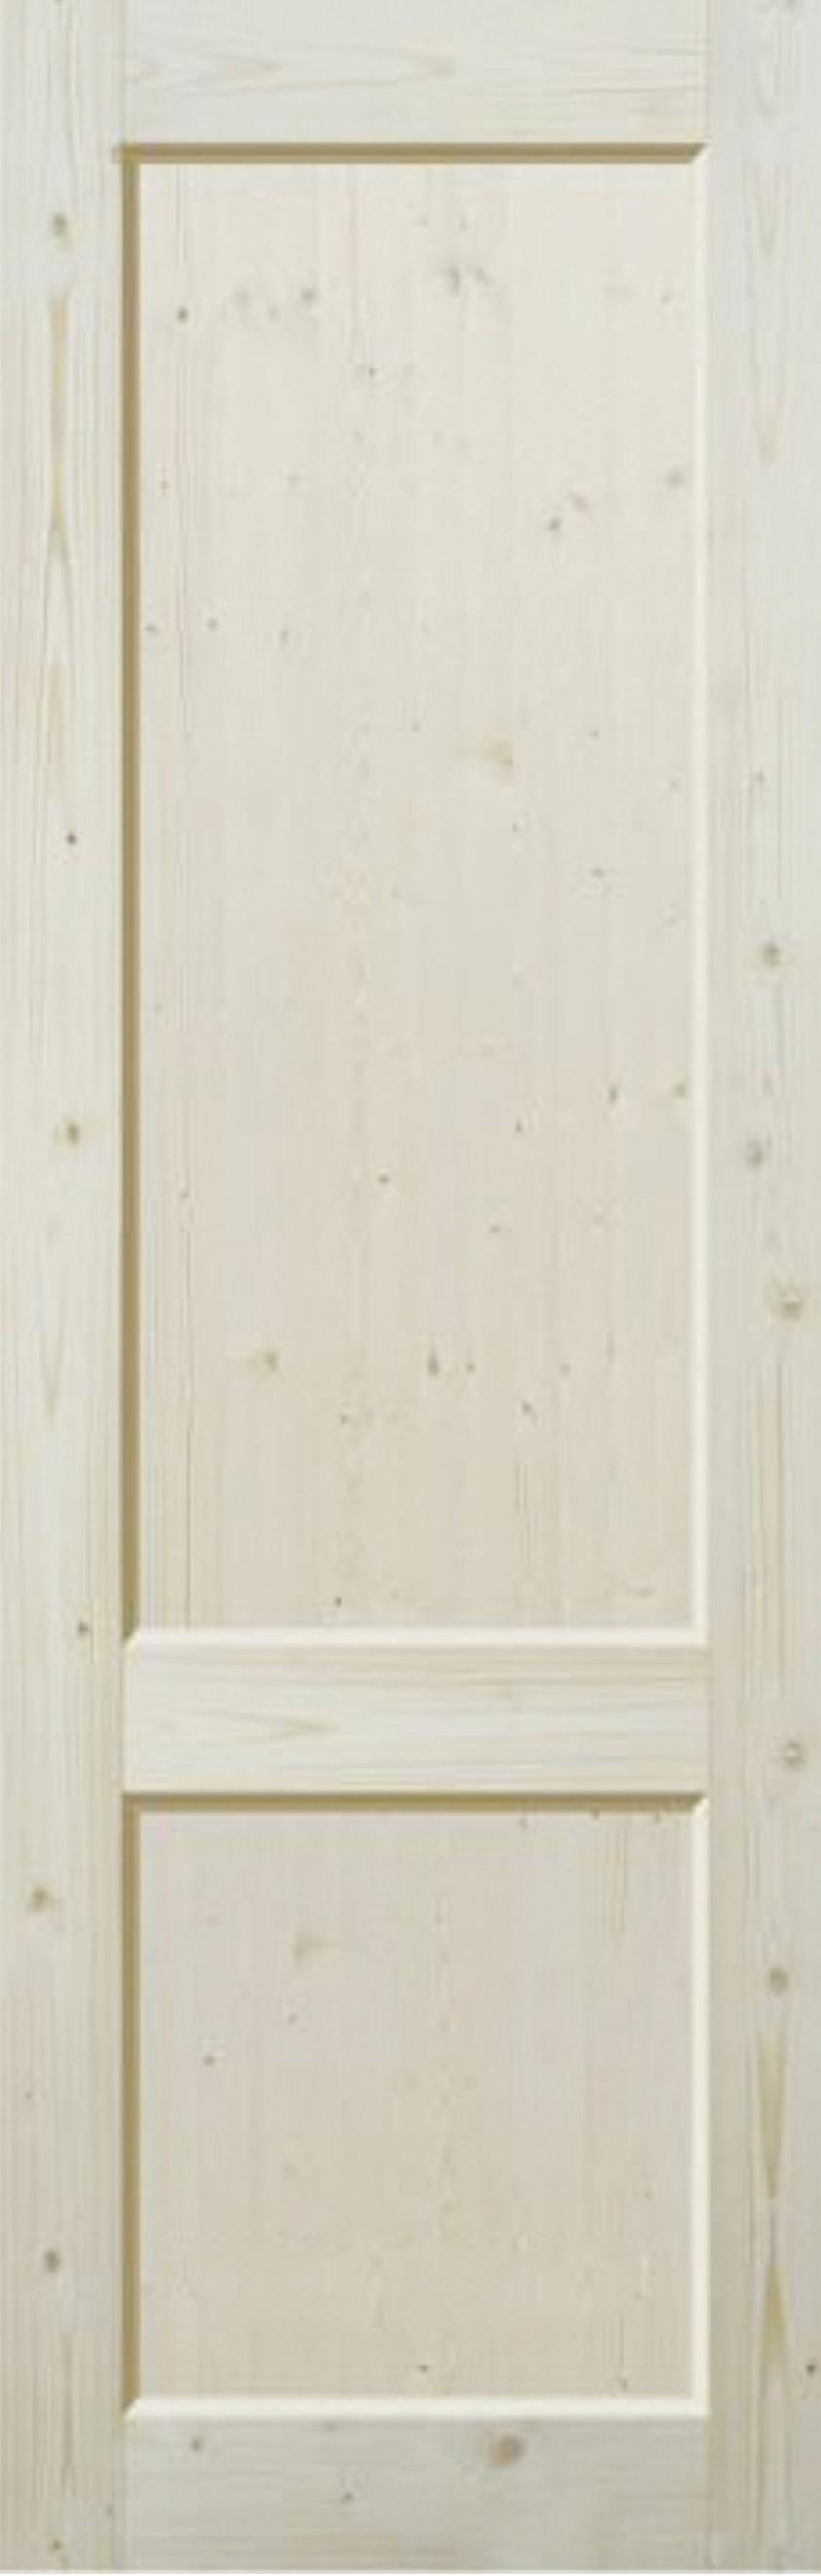 Alda Doors Межкомнатная дверь Щитовое полотно, 2 сорт, арт. 26459 - фото №1